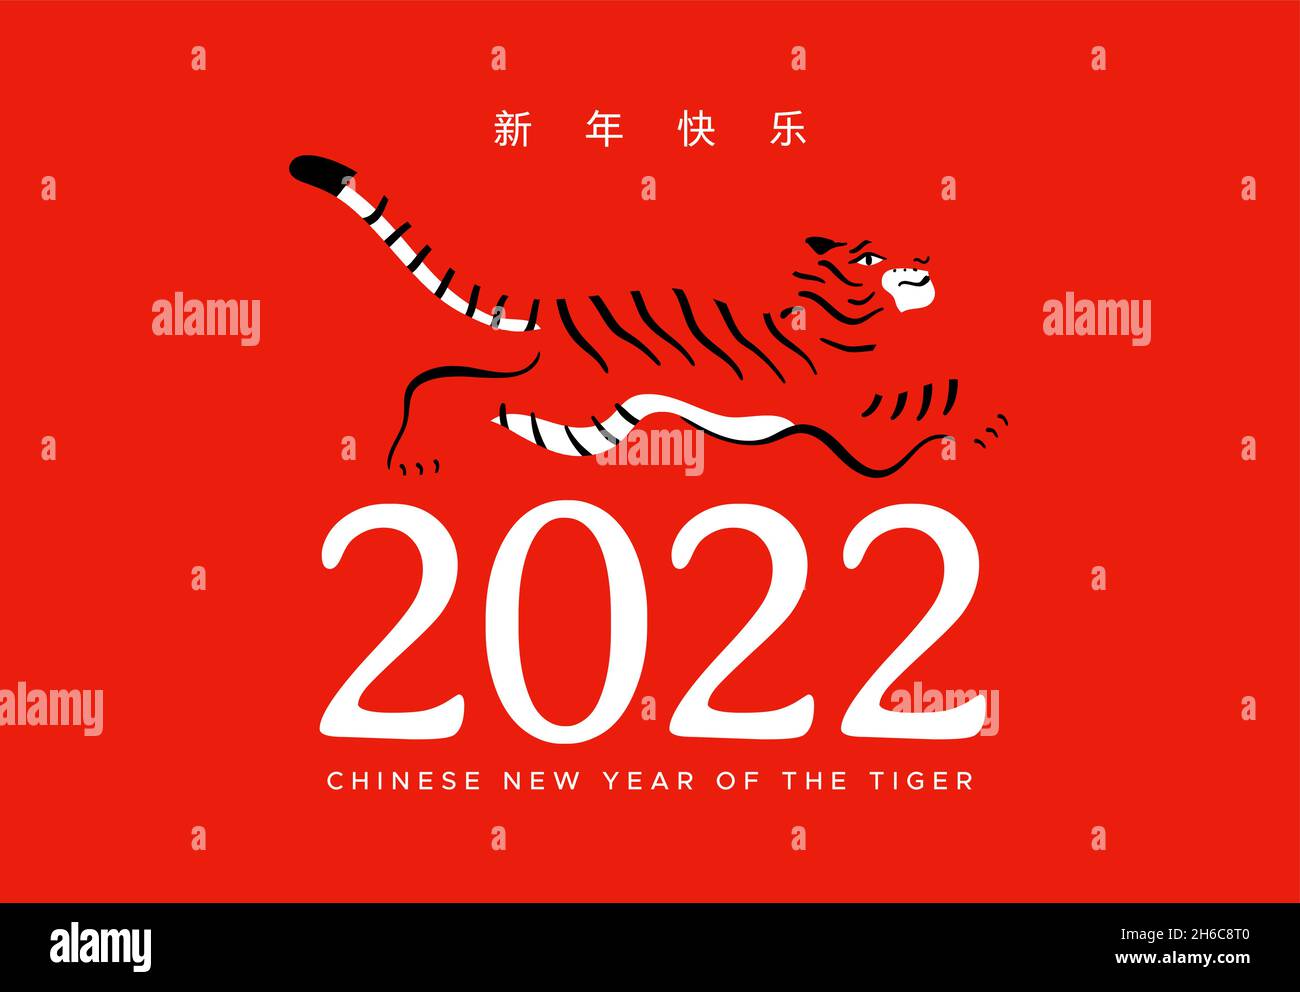 Capodanno cinese della tigre 2022 biglietto d'auguri illustrazione, creativo salto a mano animale con citazione di celebrazione asiatica. Traduzione simbolo: Holid Illustrazione Vettoriale